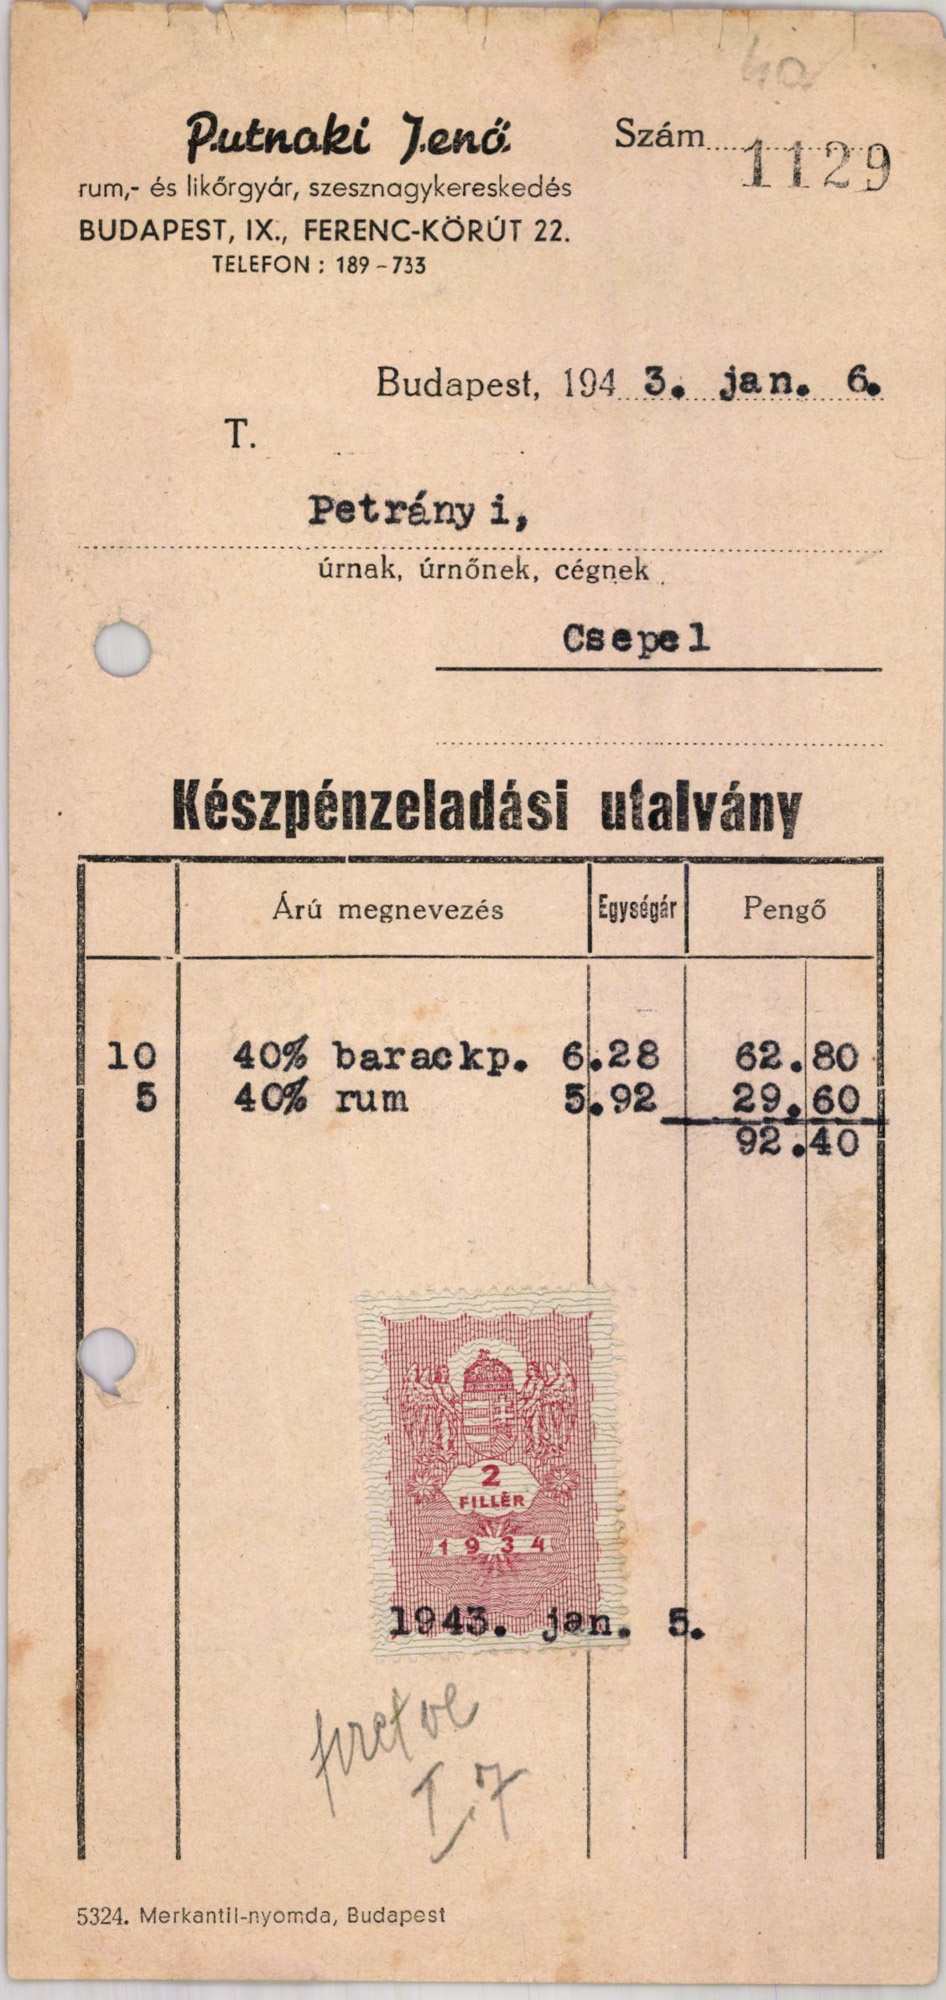 Putnoki Jenő rum-, és likőrgyár, szesznagykereskedés (Magyar Kereskedelmi és Vendéglátóipari Múzeum CC BY-NC-SA)